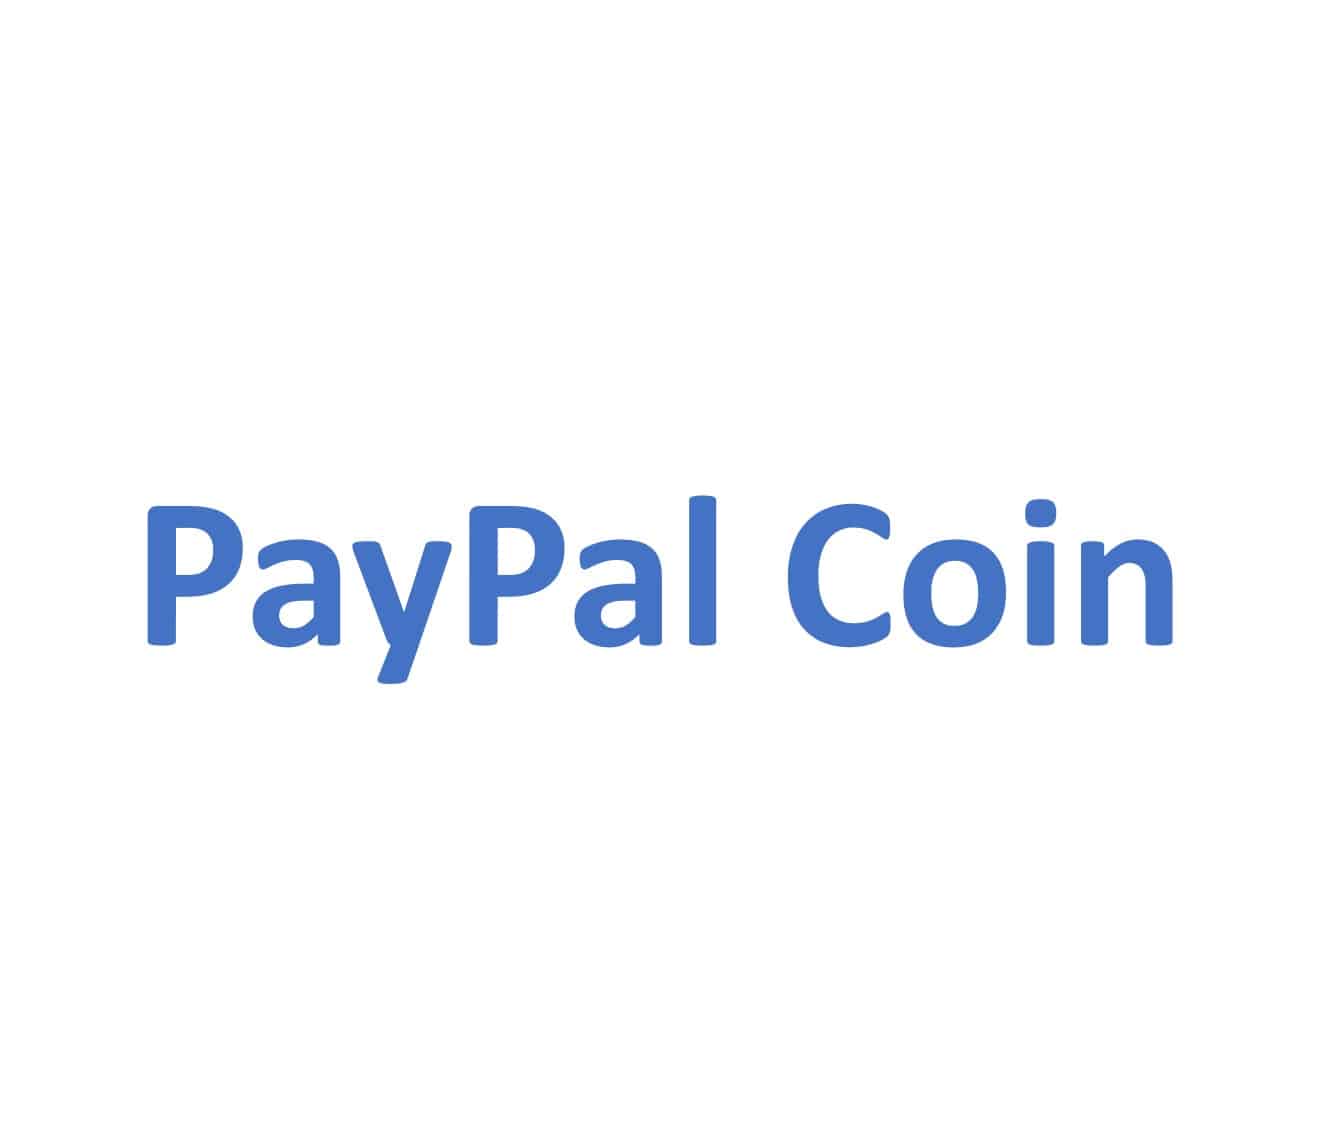 Nicht Markengebundener Hinweis auf den PayPal Coin. In dieser Auflistung die einzige digitale Währung, die nicht von einer Zentralbank ausgegeben wird.